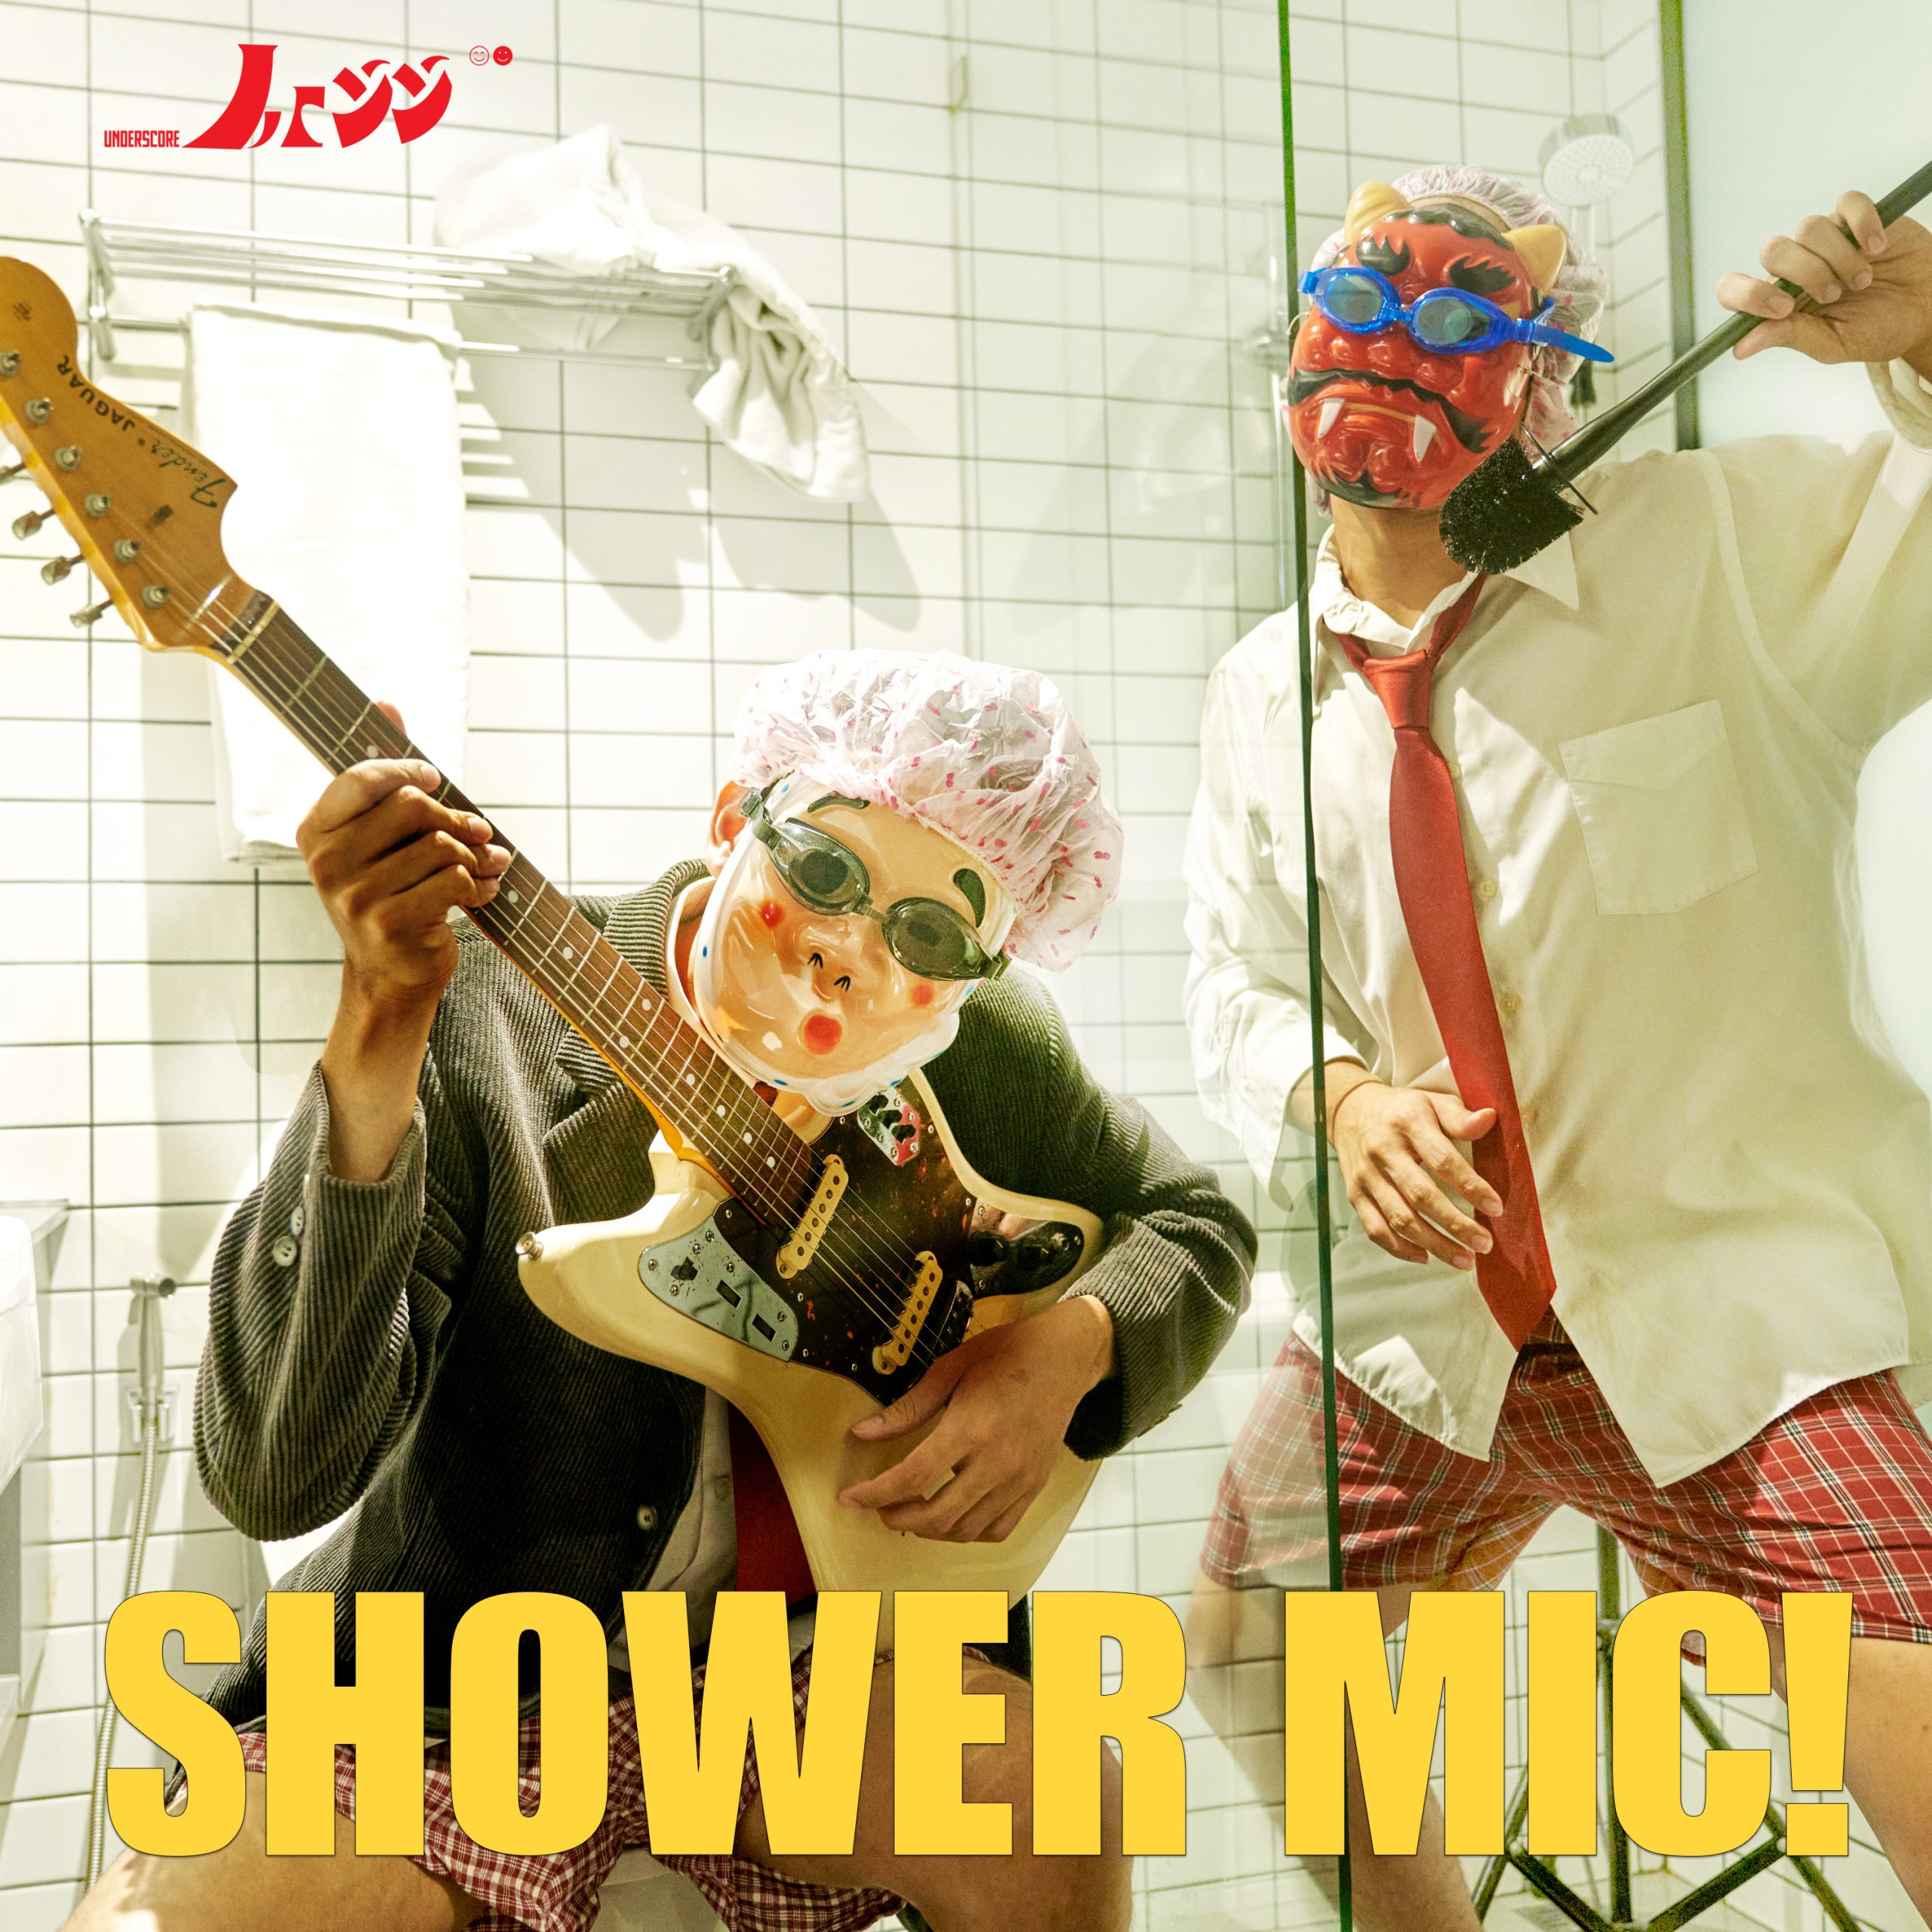 _less / Shower Mic!